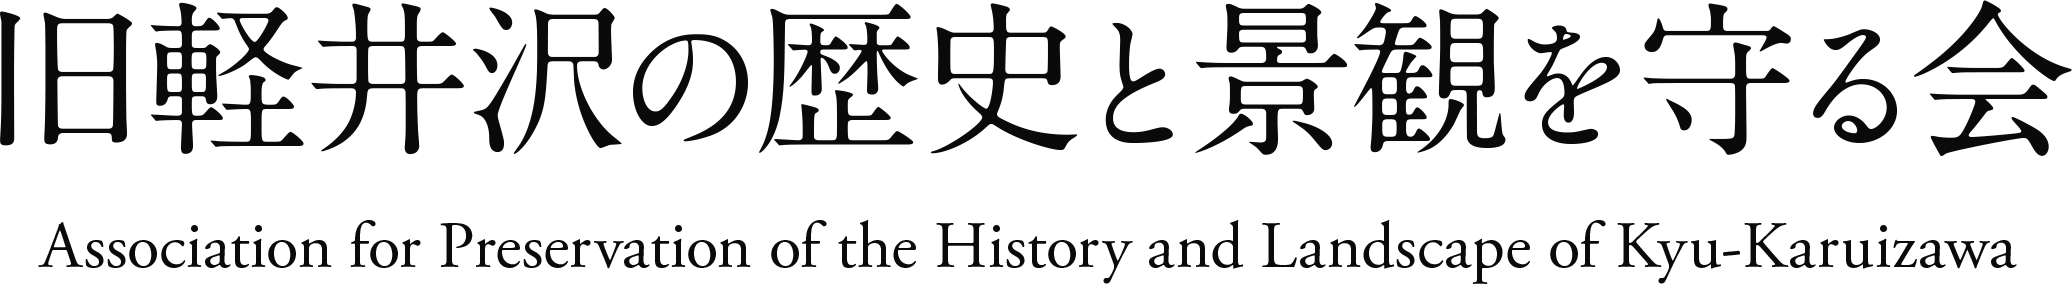 旧軽井沢の歴史と景観を守る会